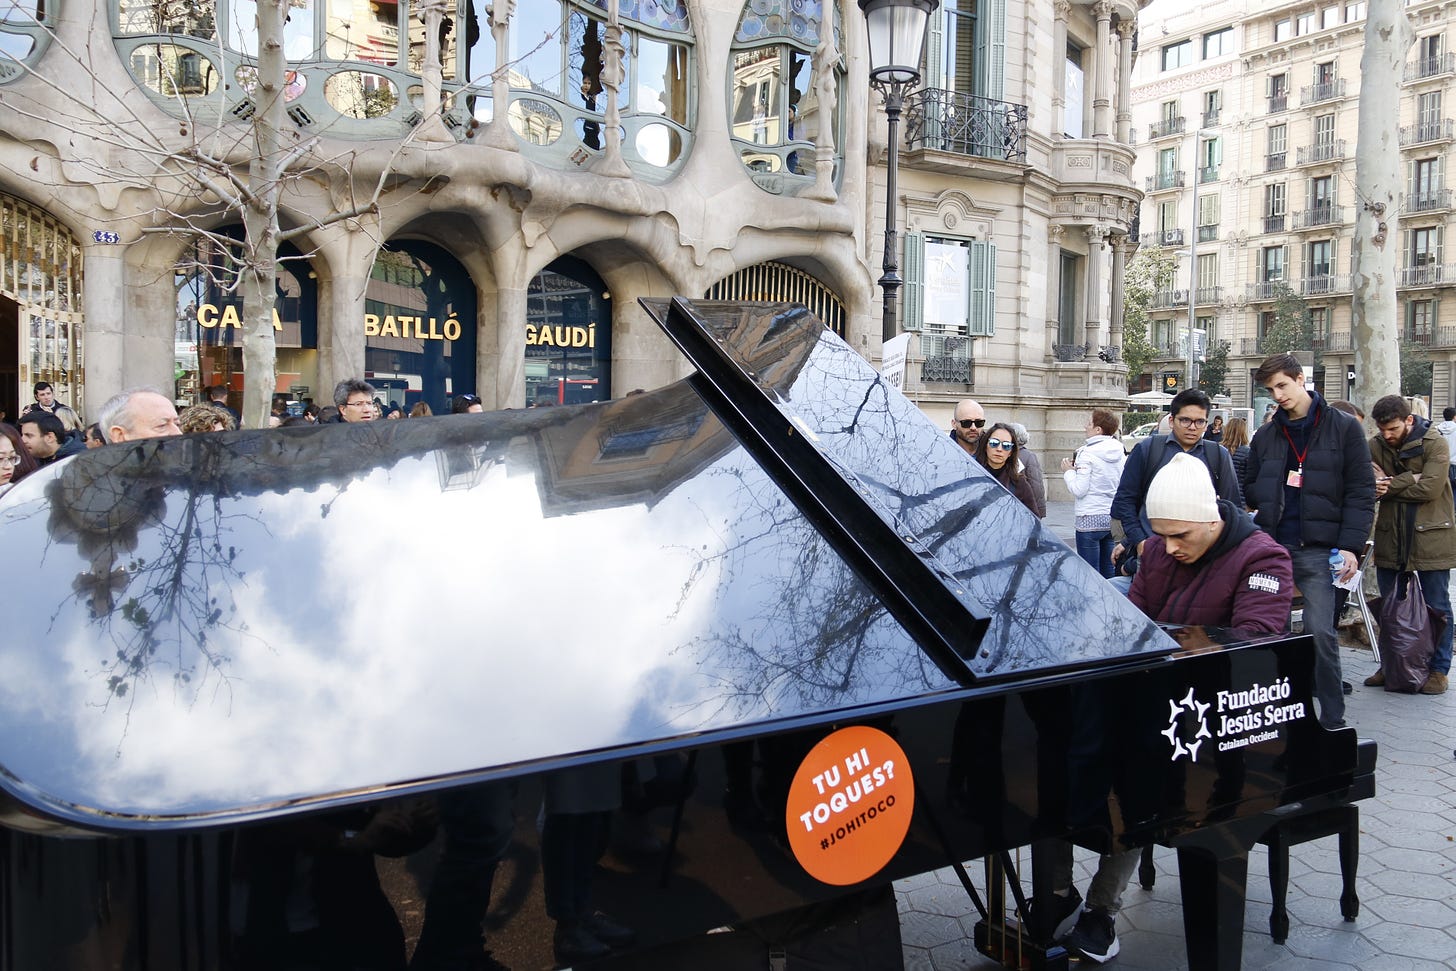 Barcelona's Passeig de Gràcia fills with pianos